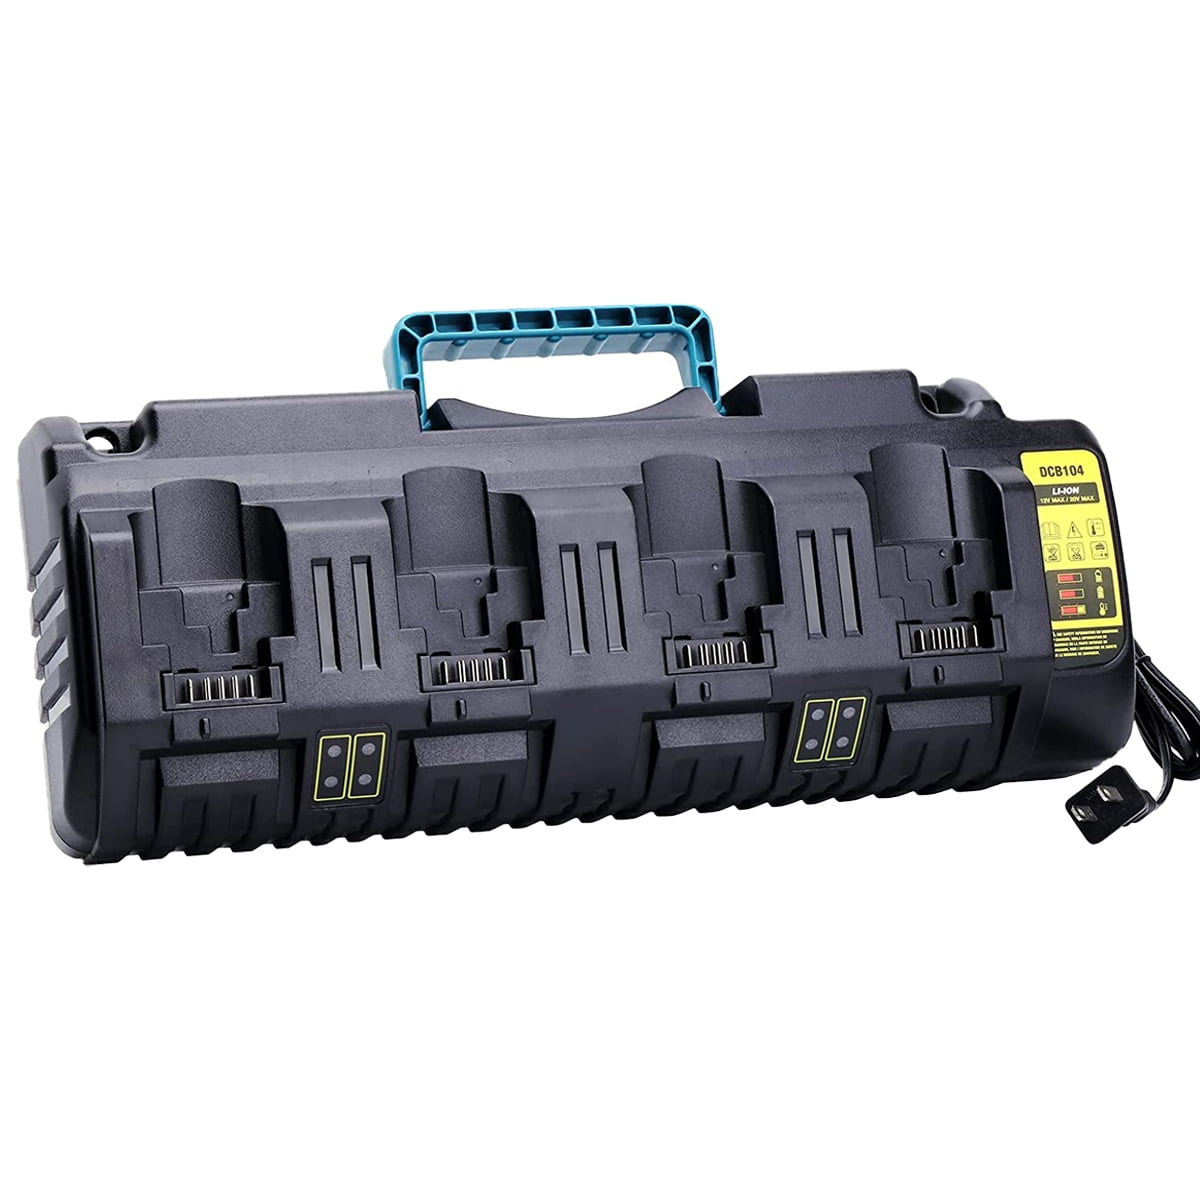 4-Port DCB104 Rapid Charger for DeWalt 20V Battery DCB3244 DCB206 DCB204  DCB203 DCB606 12/20-Volt Max Cordless Tool Battery Packs